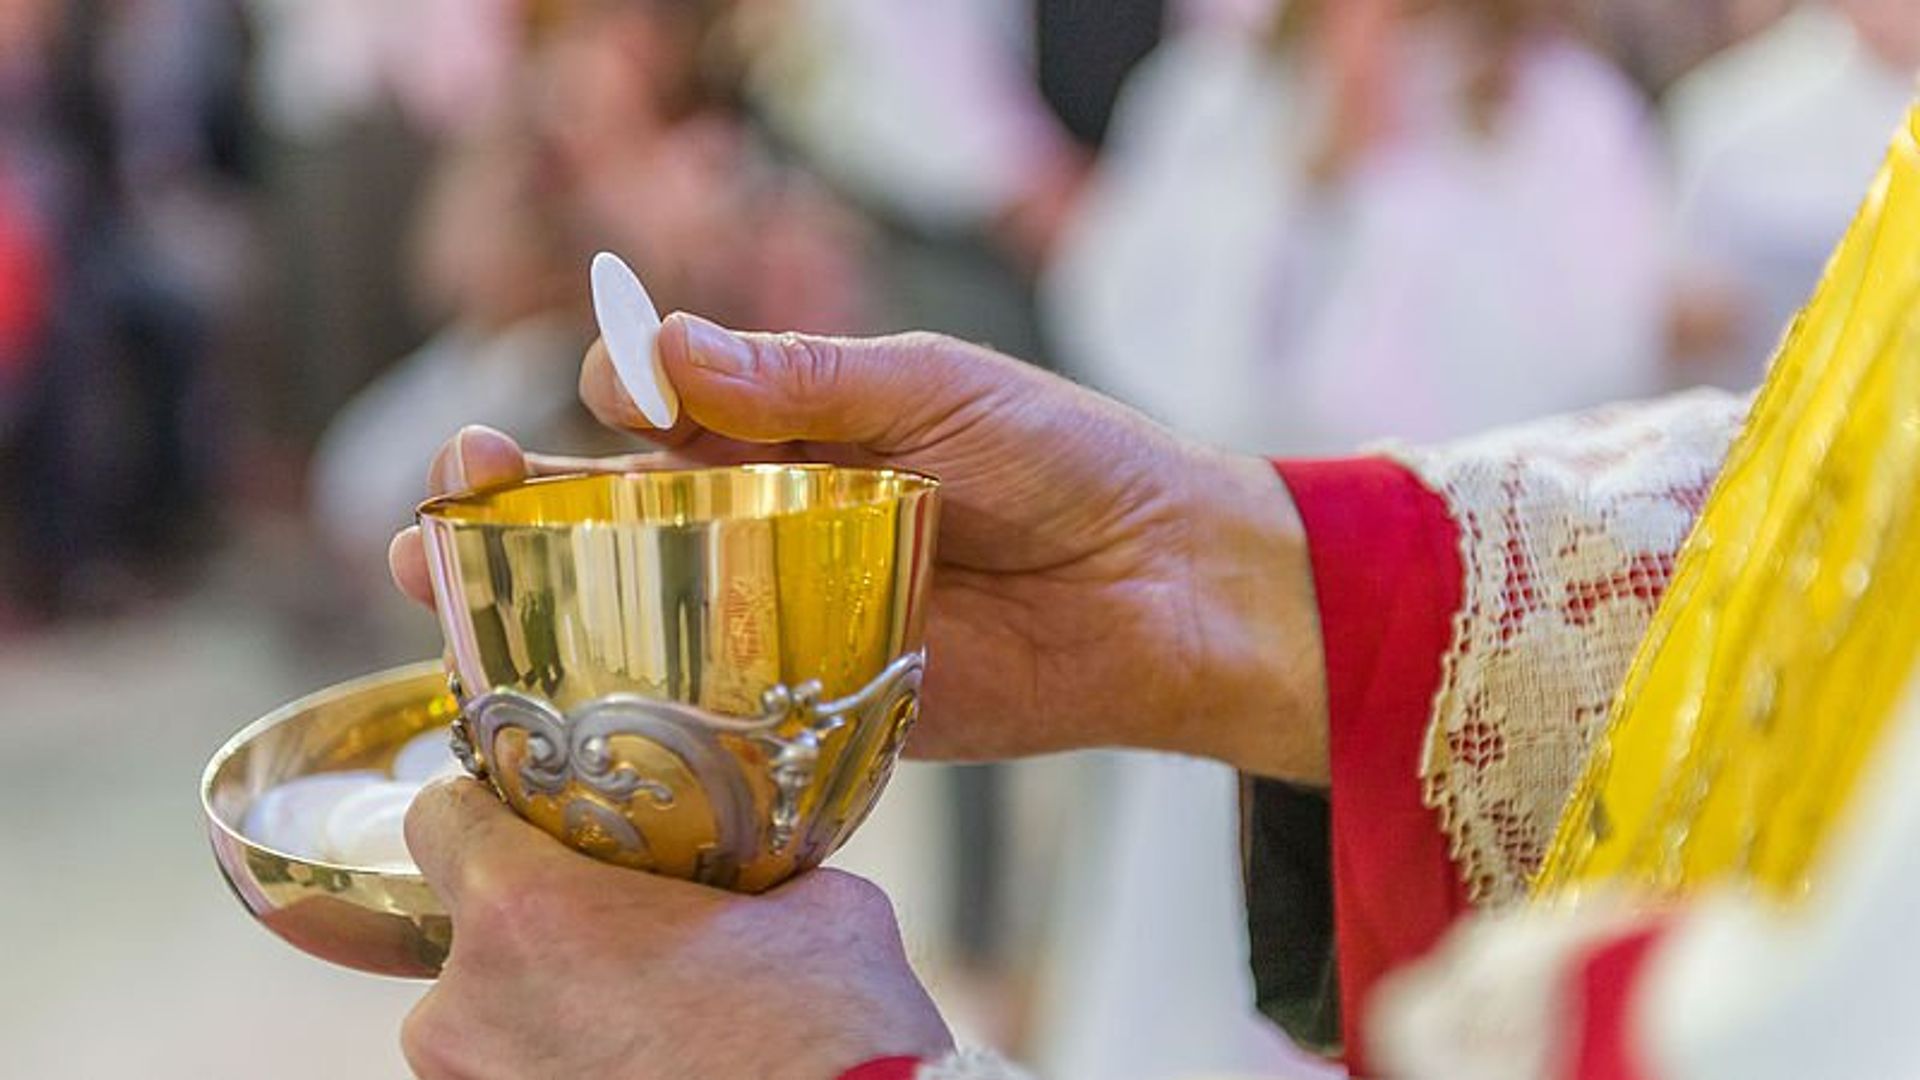 Lees ook: De protestantse Tijs van den Brink neemt deel aan de eucharistie, maar dat gaat anders dan verwacht